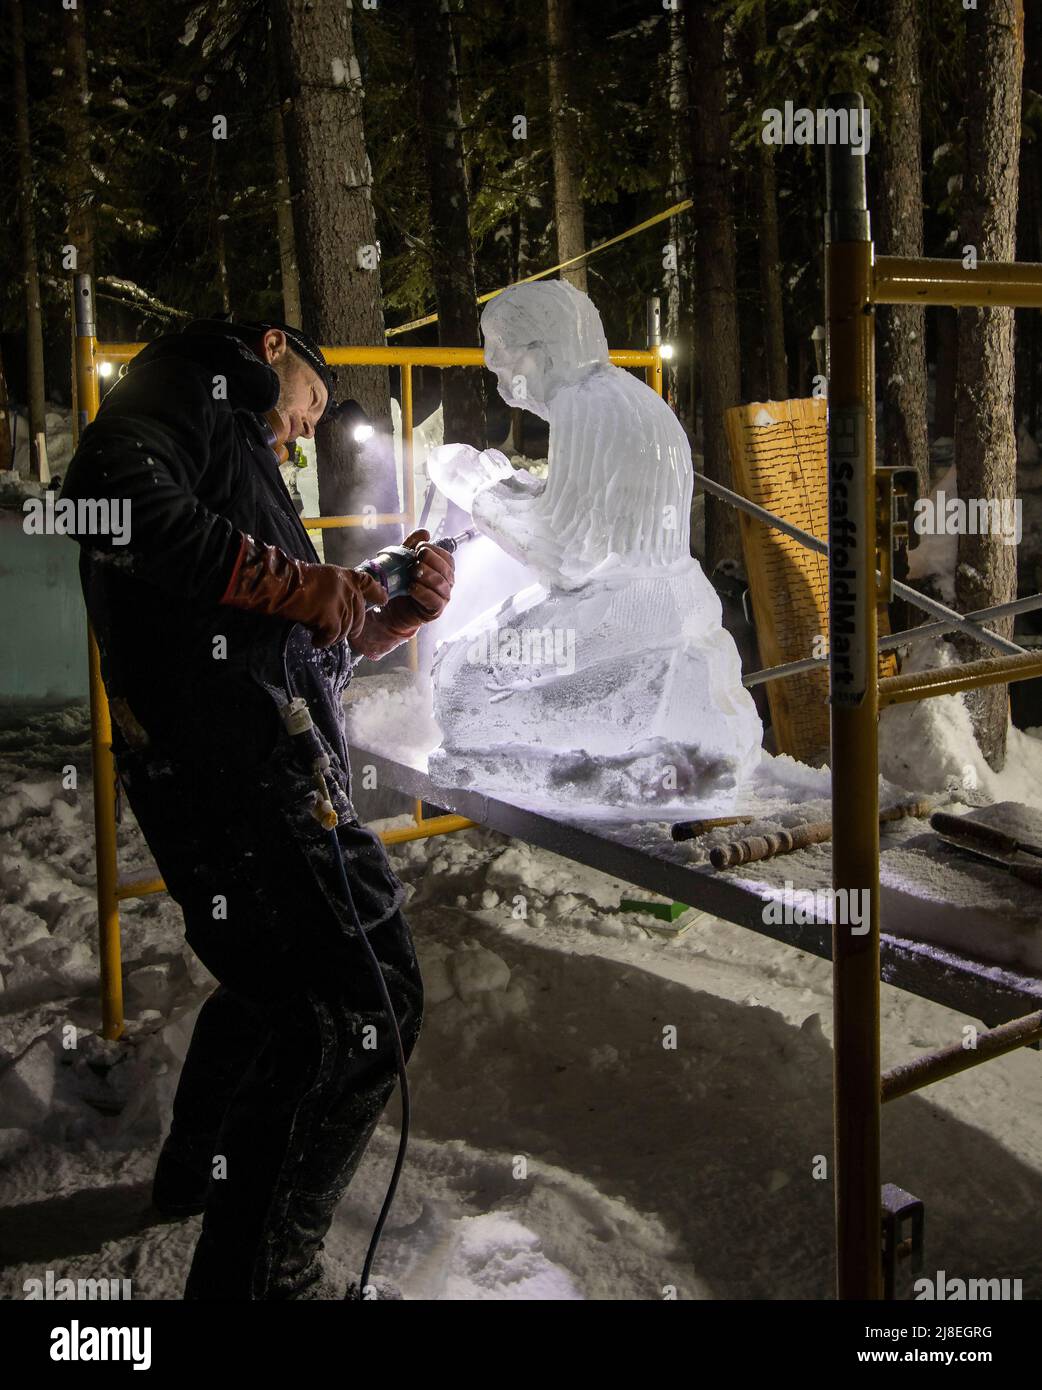 Der Mensch modelliert Eis auf einem von vielen Eiskunstlaufrädern, die im Februar bei der Eiskunstweltmeisterschaft vor Fairbanks, AK, gesehen wurden. Stockfoto